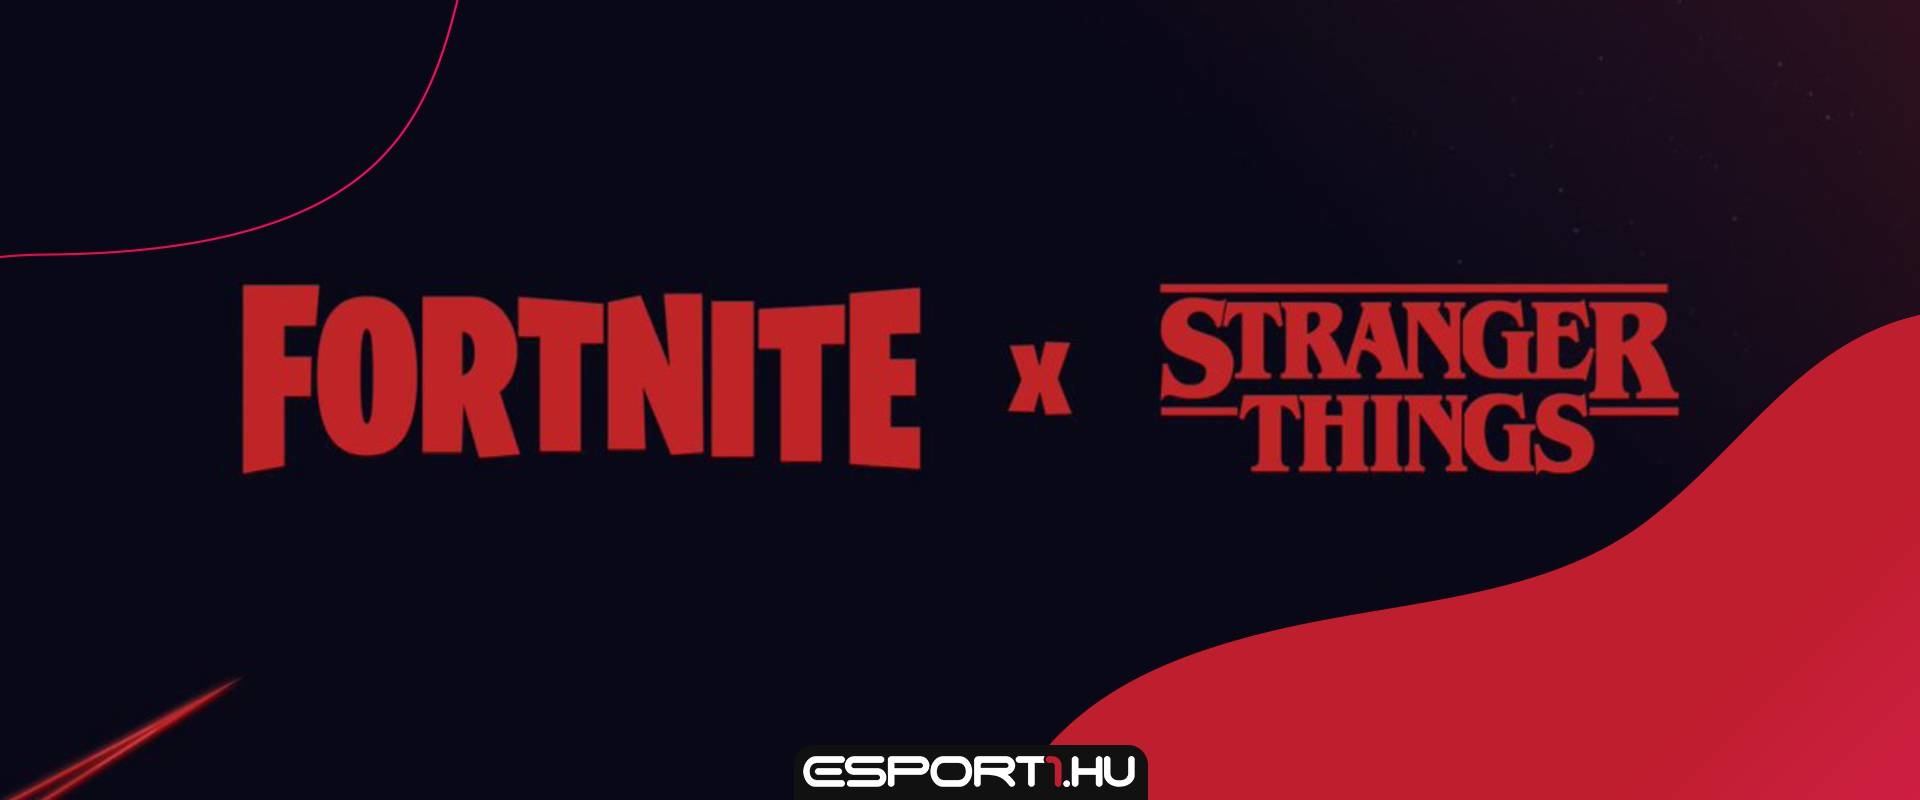 Az Epic Games-től is megérkezett a Fortnite x Stranger Things bejelentése